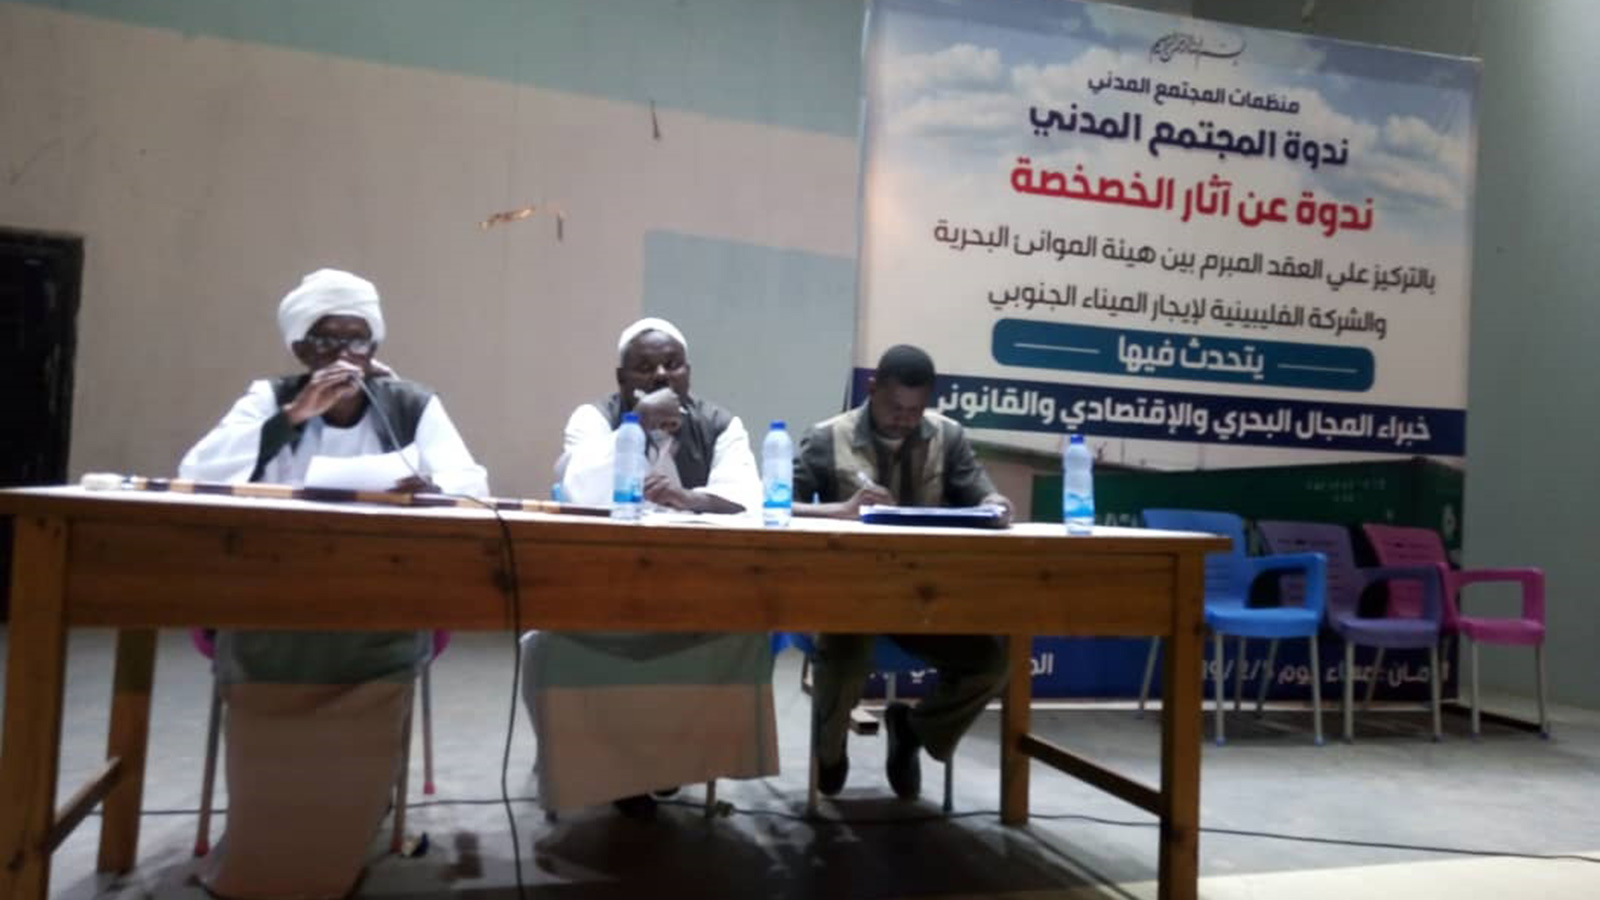 ‪ندوة منظمات المجتمع المدني التي أعلن فيها عن الإضراب العام بكل موانئ بورتسودان وسواكن‬ (الجزيرة)